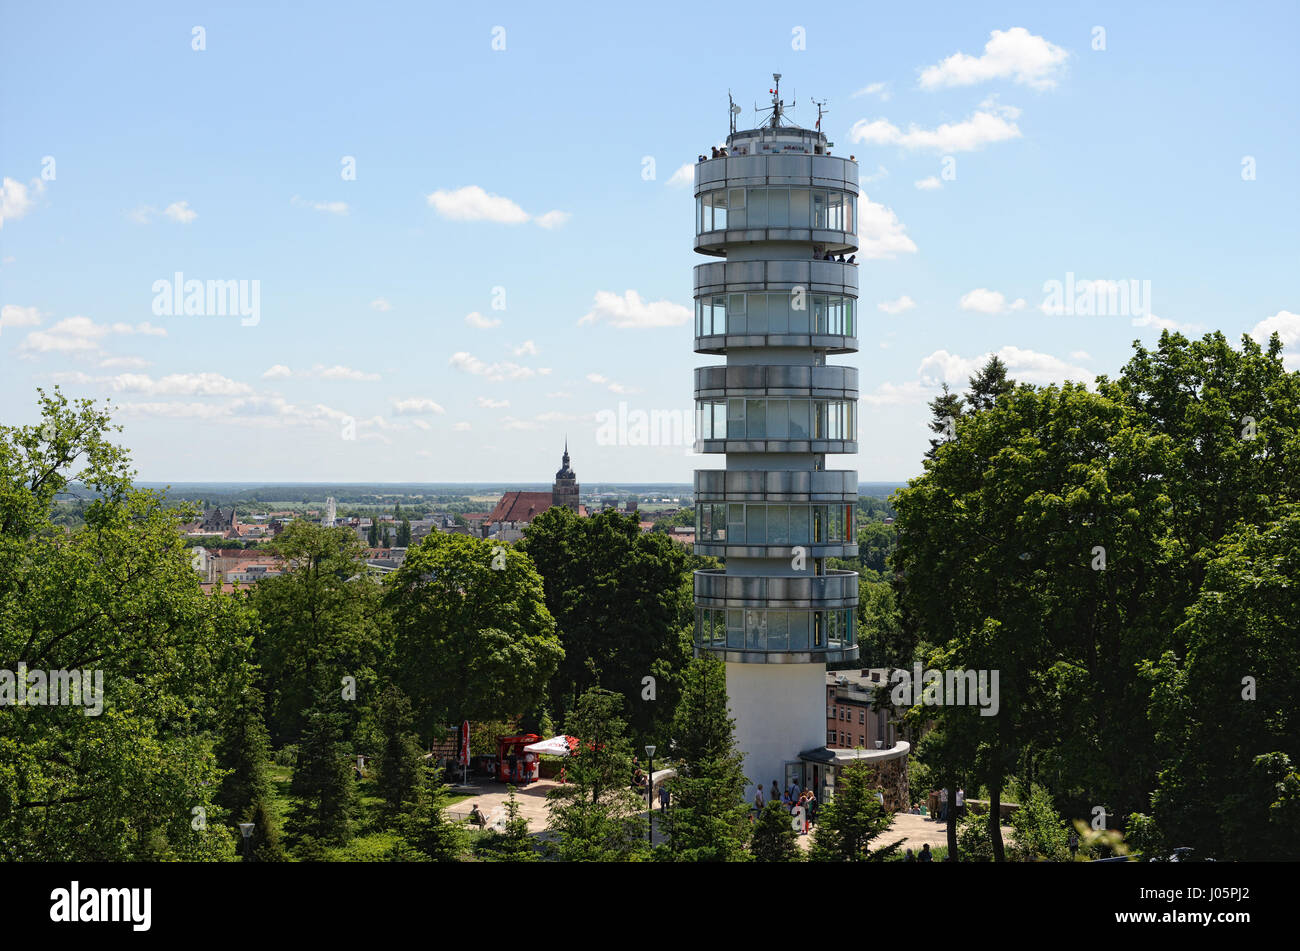 BRANDENBURG AN DER HAVEL, BRANDENBURG/ GERMANY June 28 2015: Cityscape of Brandenburg an der Havel with its tower Friedensturm at Marienberg hill. Peo Stock Photo